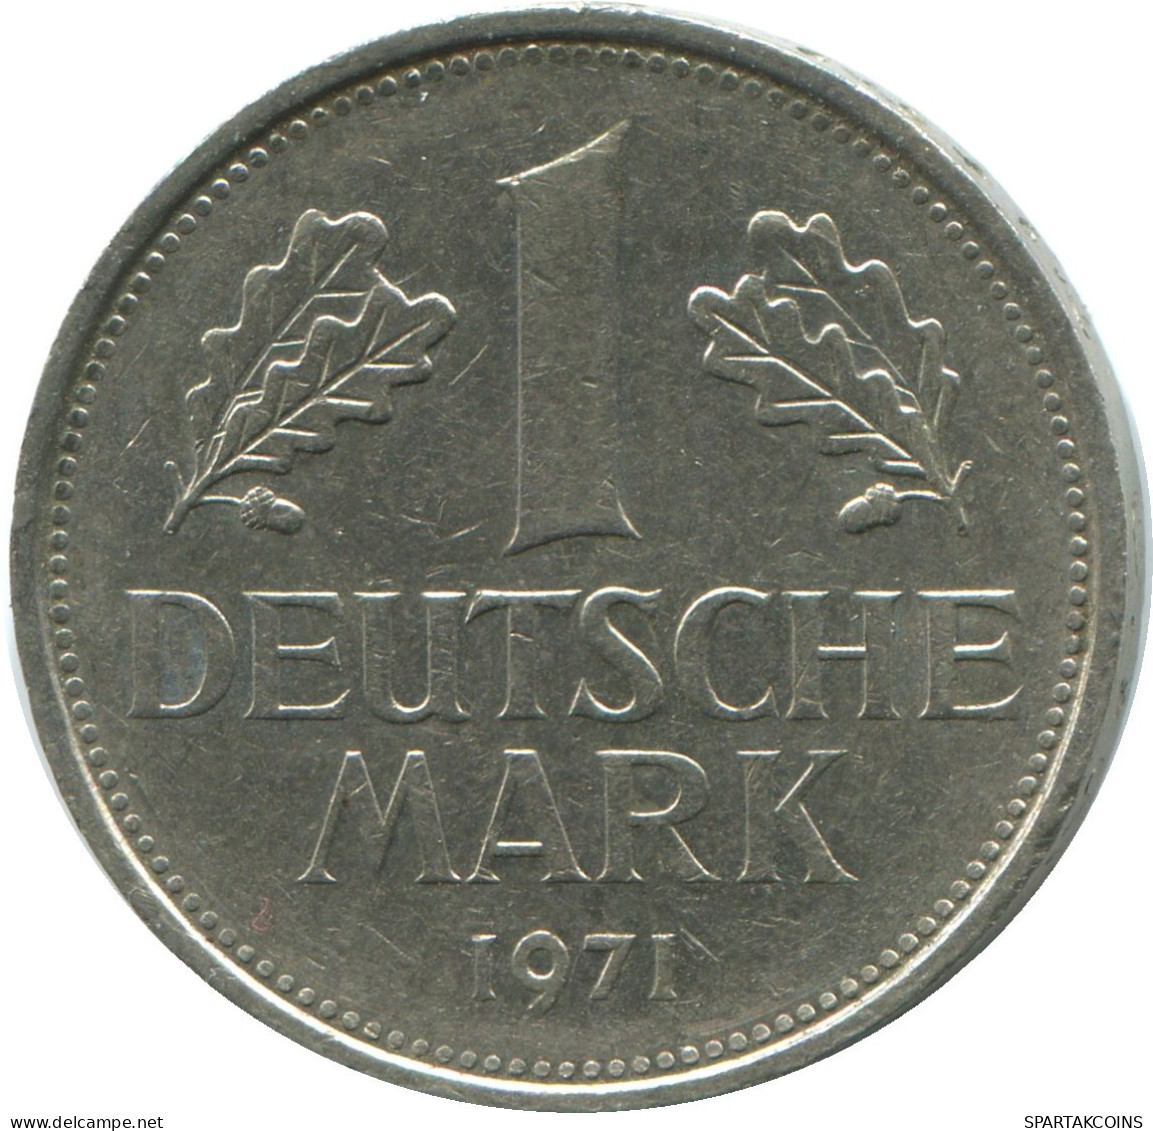 1 MARK 1971 J BRD ALEMANIA Moneda GERMANY #DE10410.5.E.A - 1 Mark